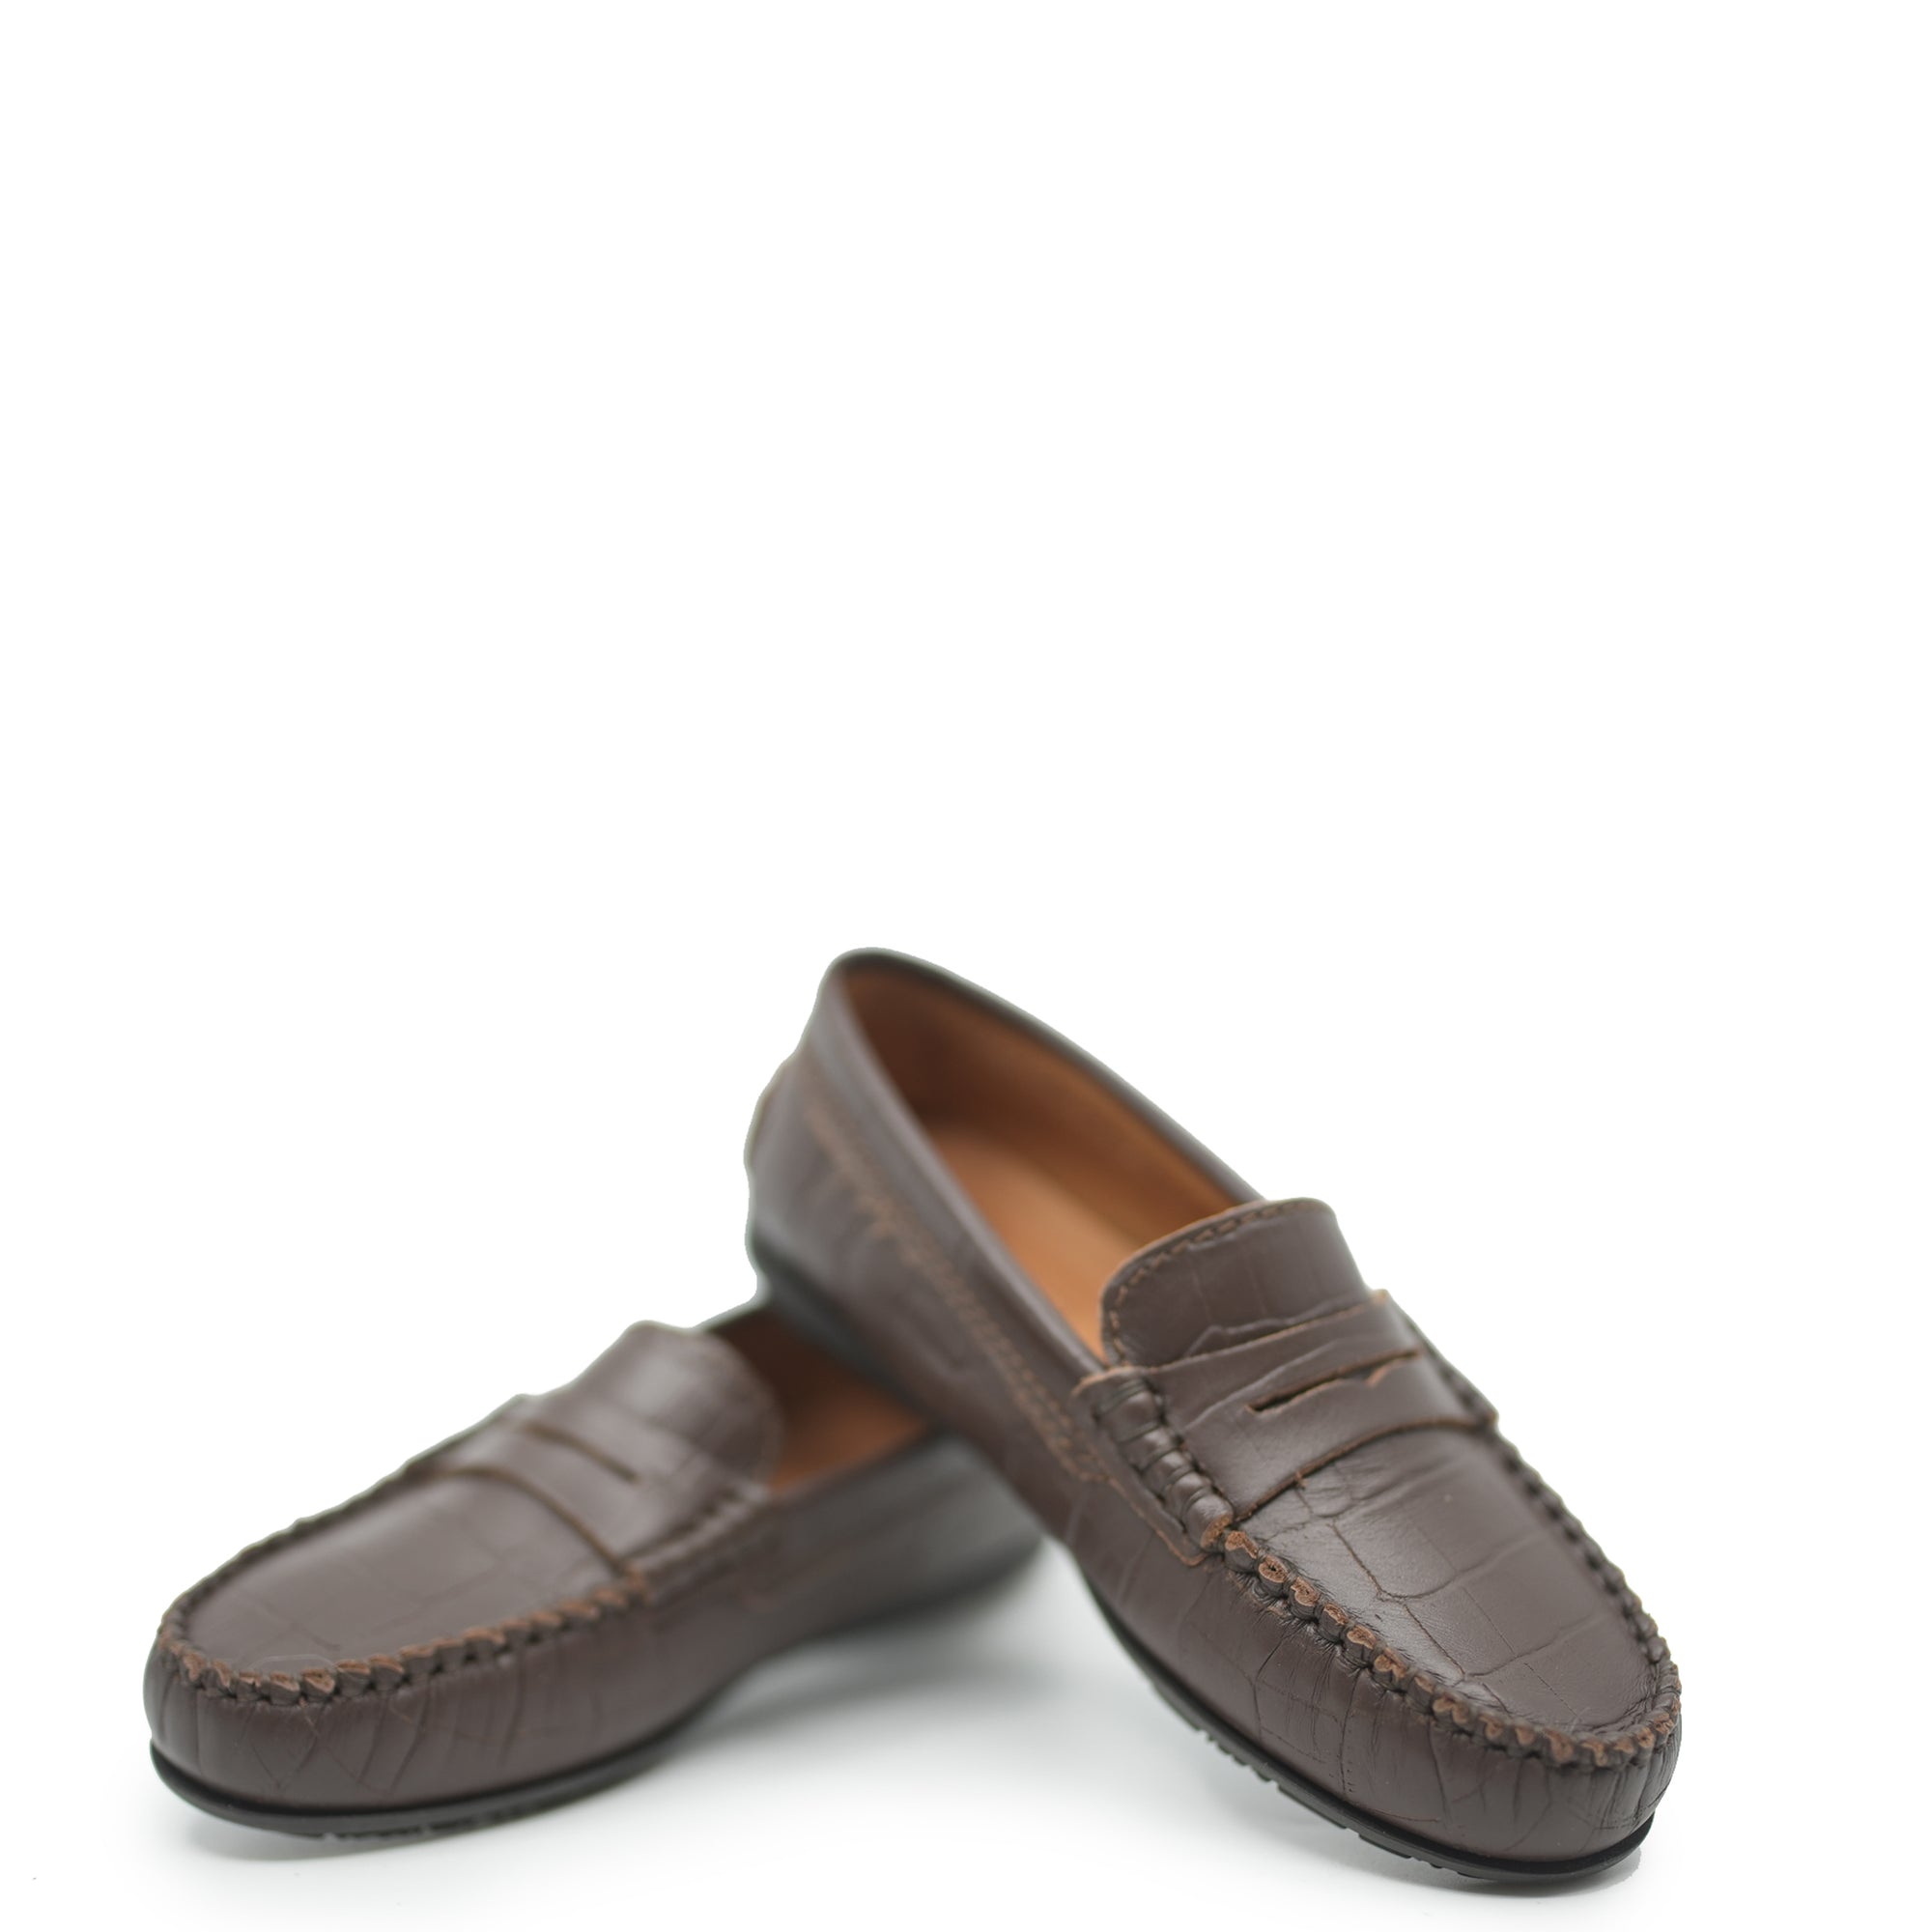 Atlanta Mocassin Brown Croc Penny Loafer-Tassel Children Shoes